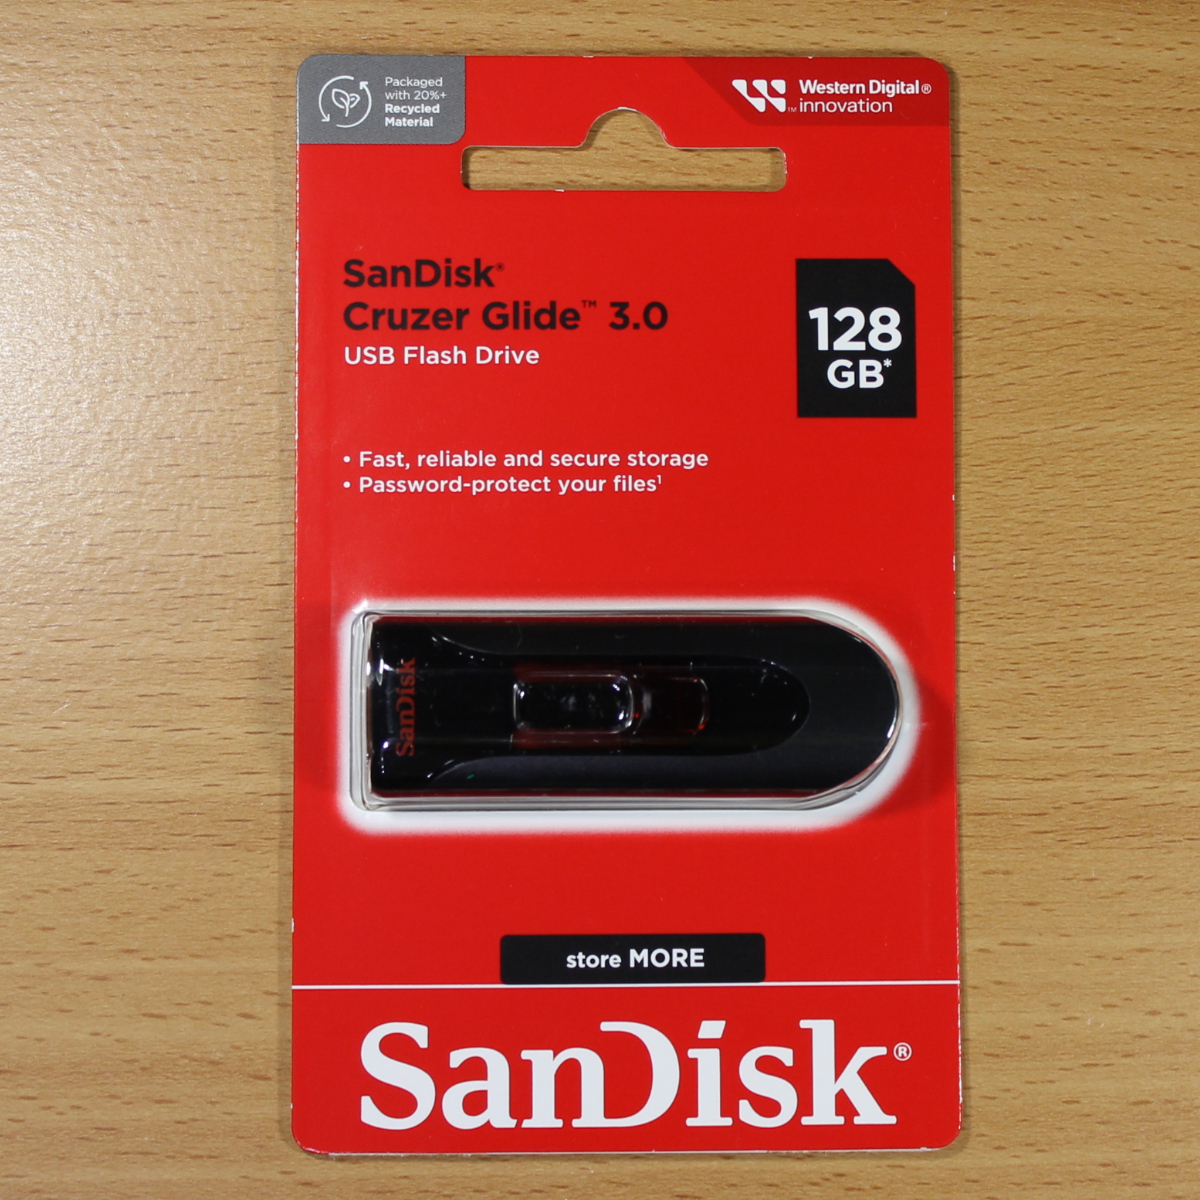 【ネコポス便】 SanDisk サンディスク USBメモリ 128GB Cruzer Glide / USB3.0 高速対応 / スライド式キャップレス_画像1